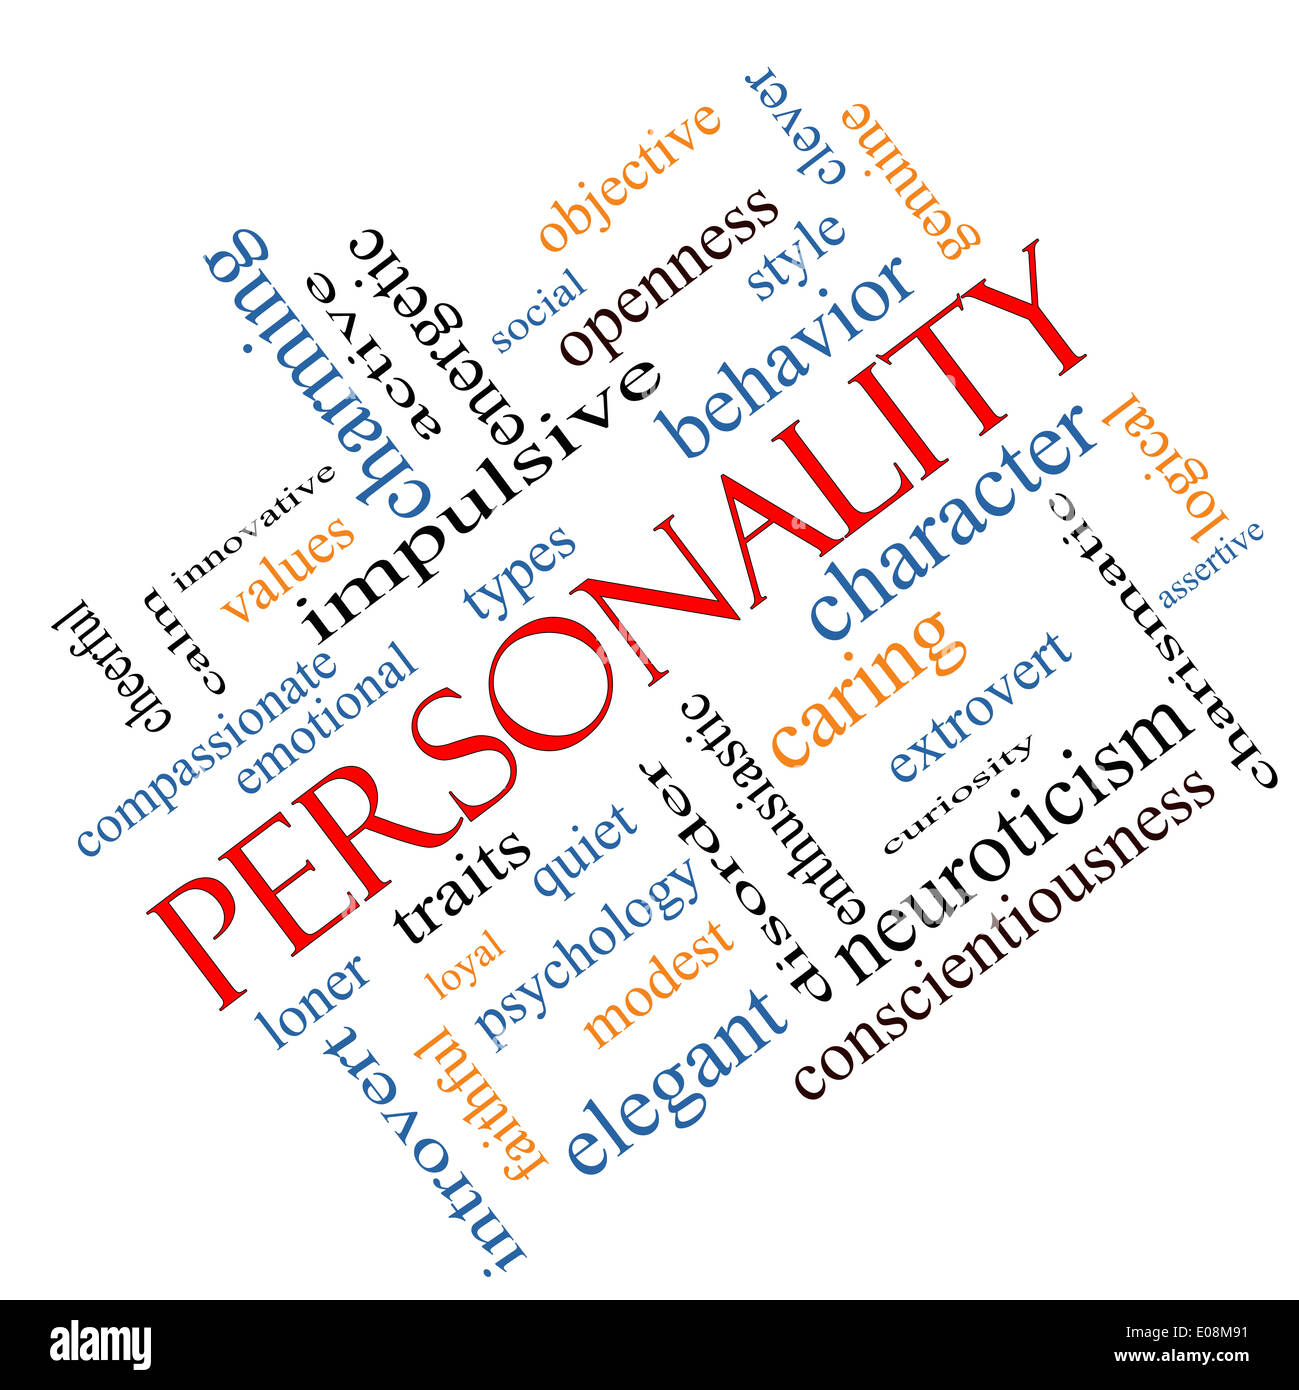 Persönlichkeit Word Cloud Konzept abgewinkelt mit großen Begriffe wie fröhlich, Charakter, Verhalten und vieles mehr. Stockfoto